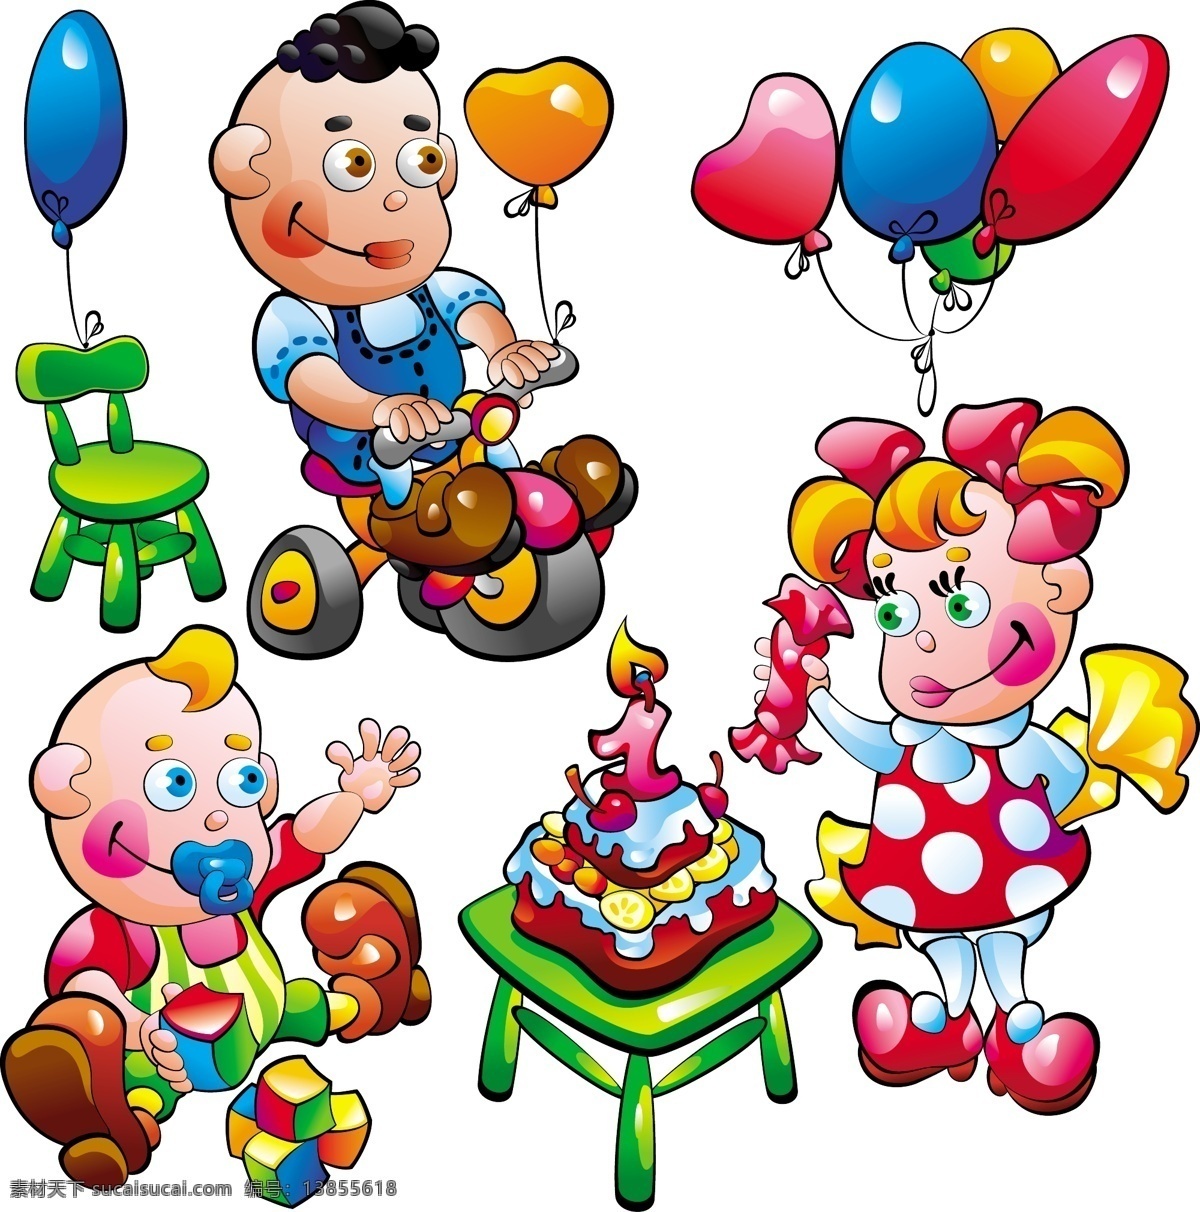 儿童玩具 主题 矢量 蛋糕 儿童 卡通 气球 矢量素材 玩具 小男孩 小女孩 小熊 小椅子 婴儿 矢量图 日常生活